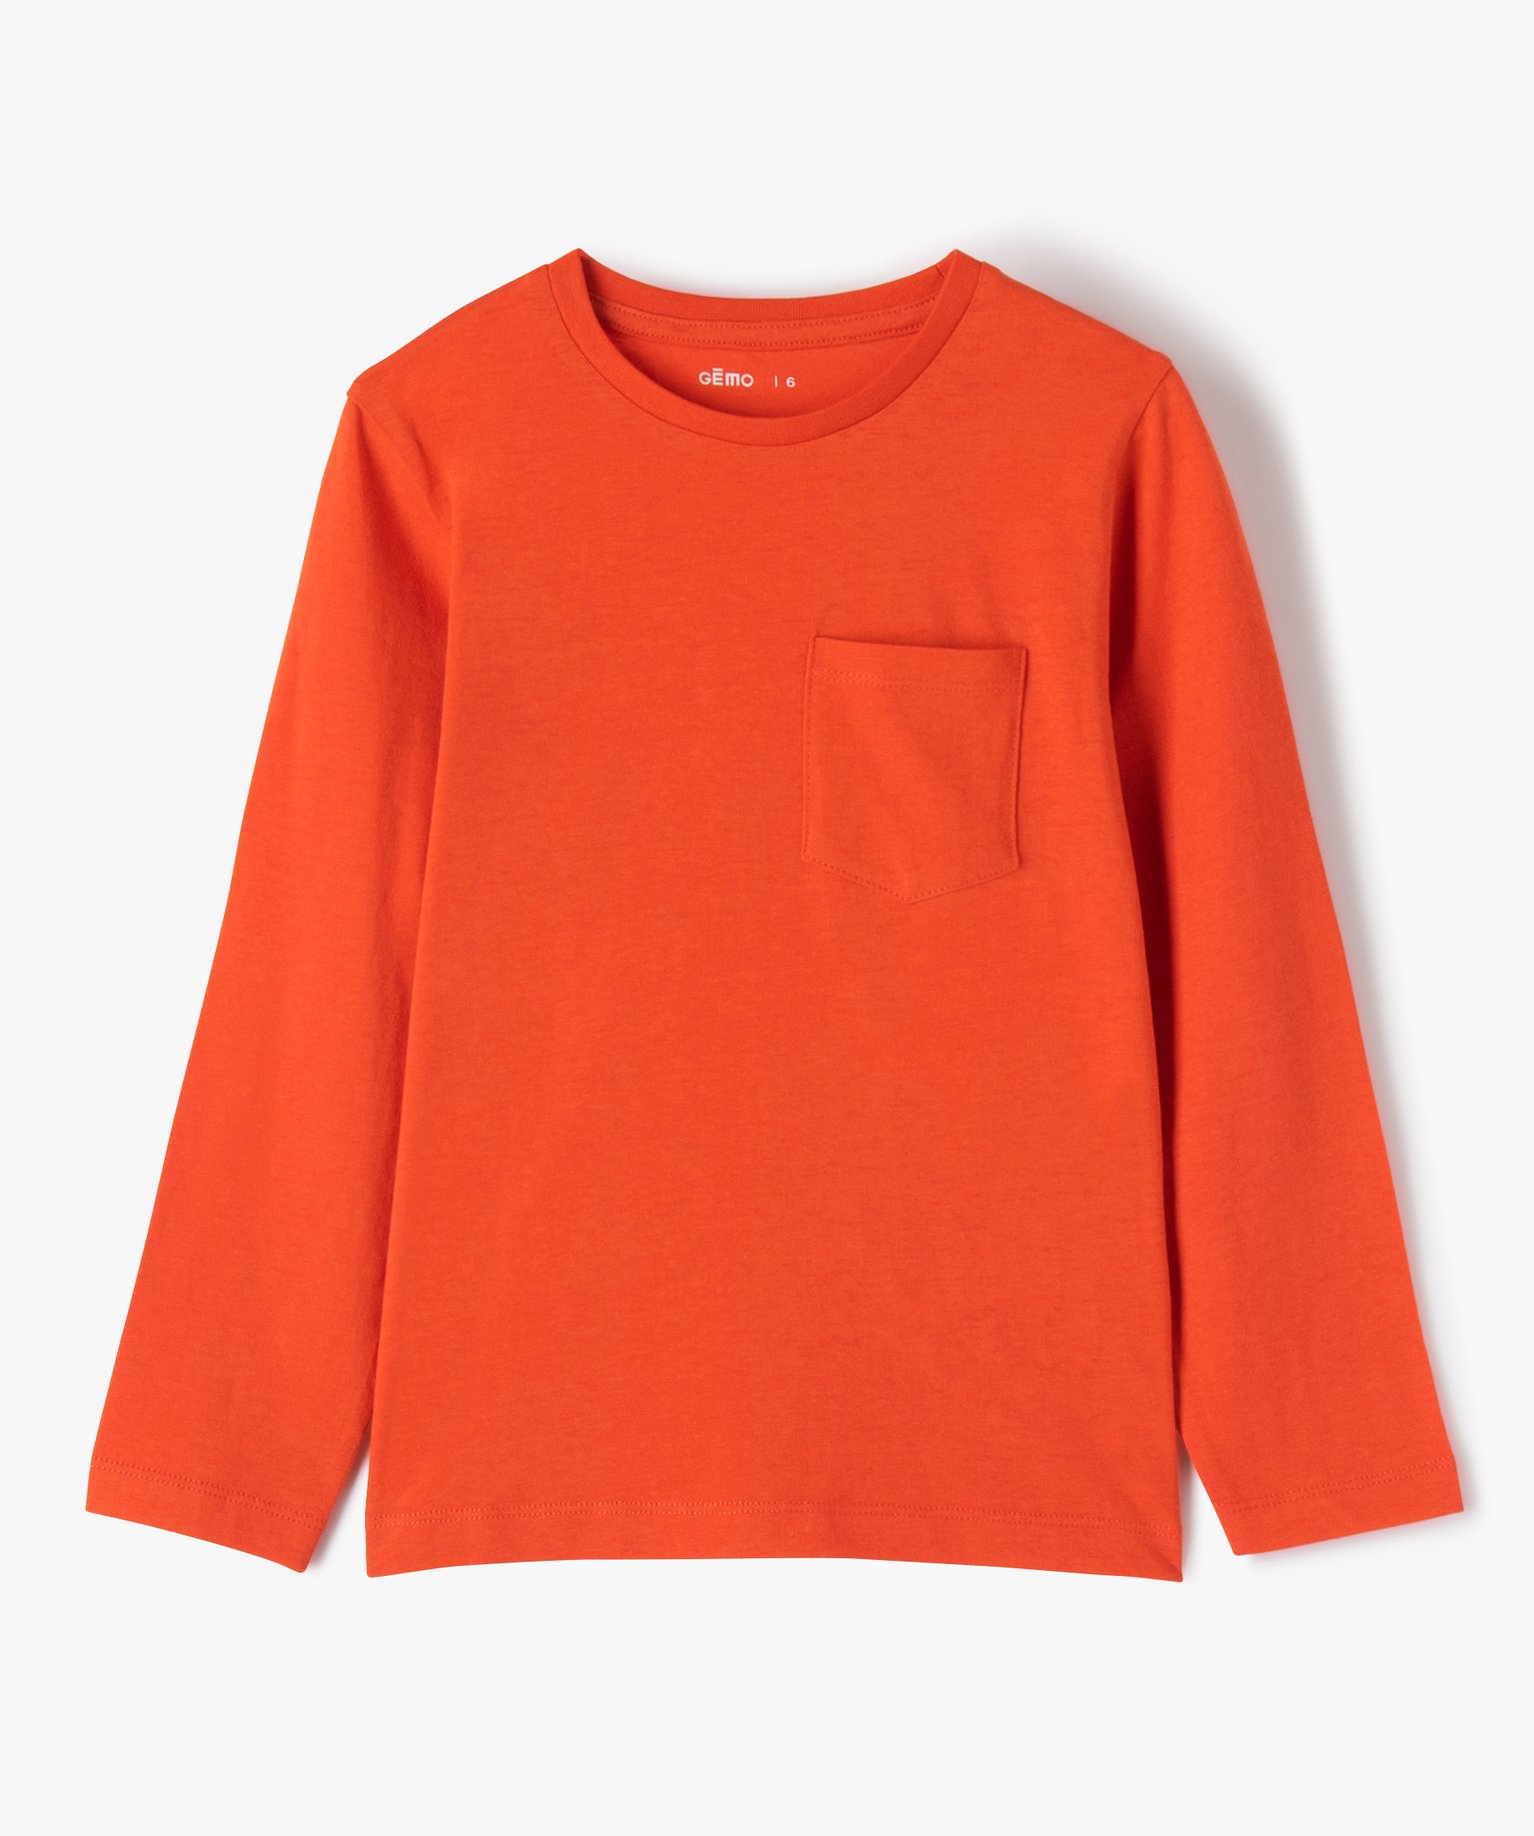 tee-shirt garcon manches longues a poche poitrine orange tee-shirts